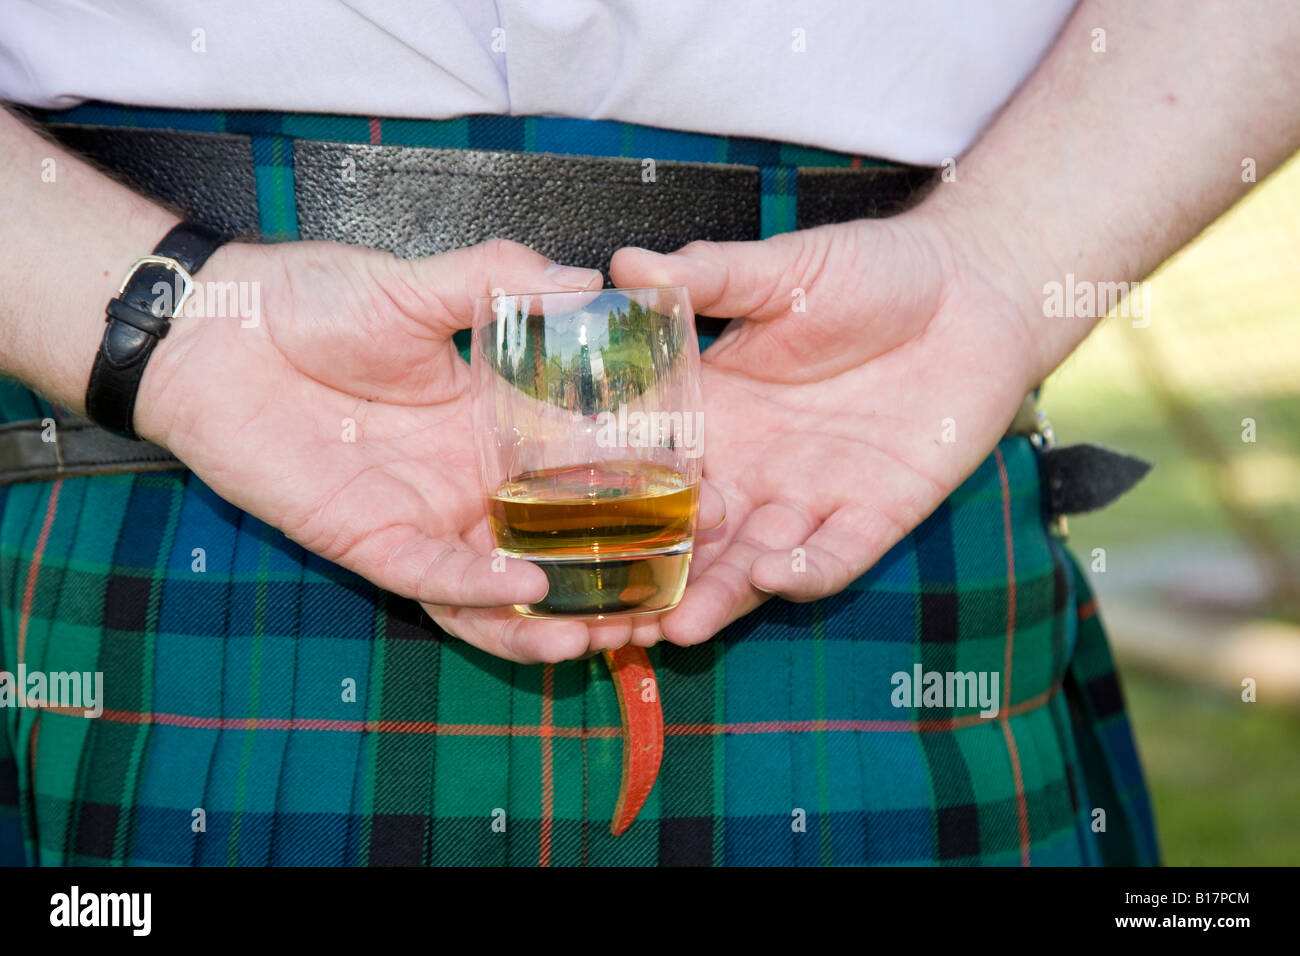 Scottish Highland Games - Scotch whisky or whiskey glass held behind back of kilt wearing scotsman, Scotland uk Stock Photo